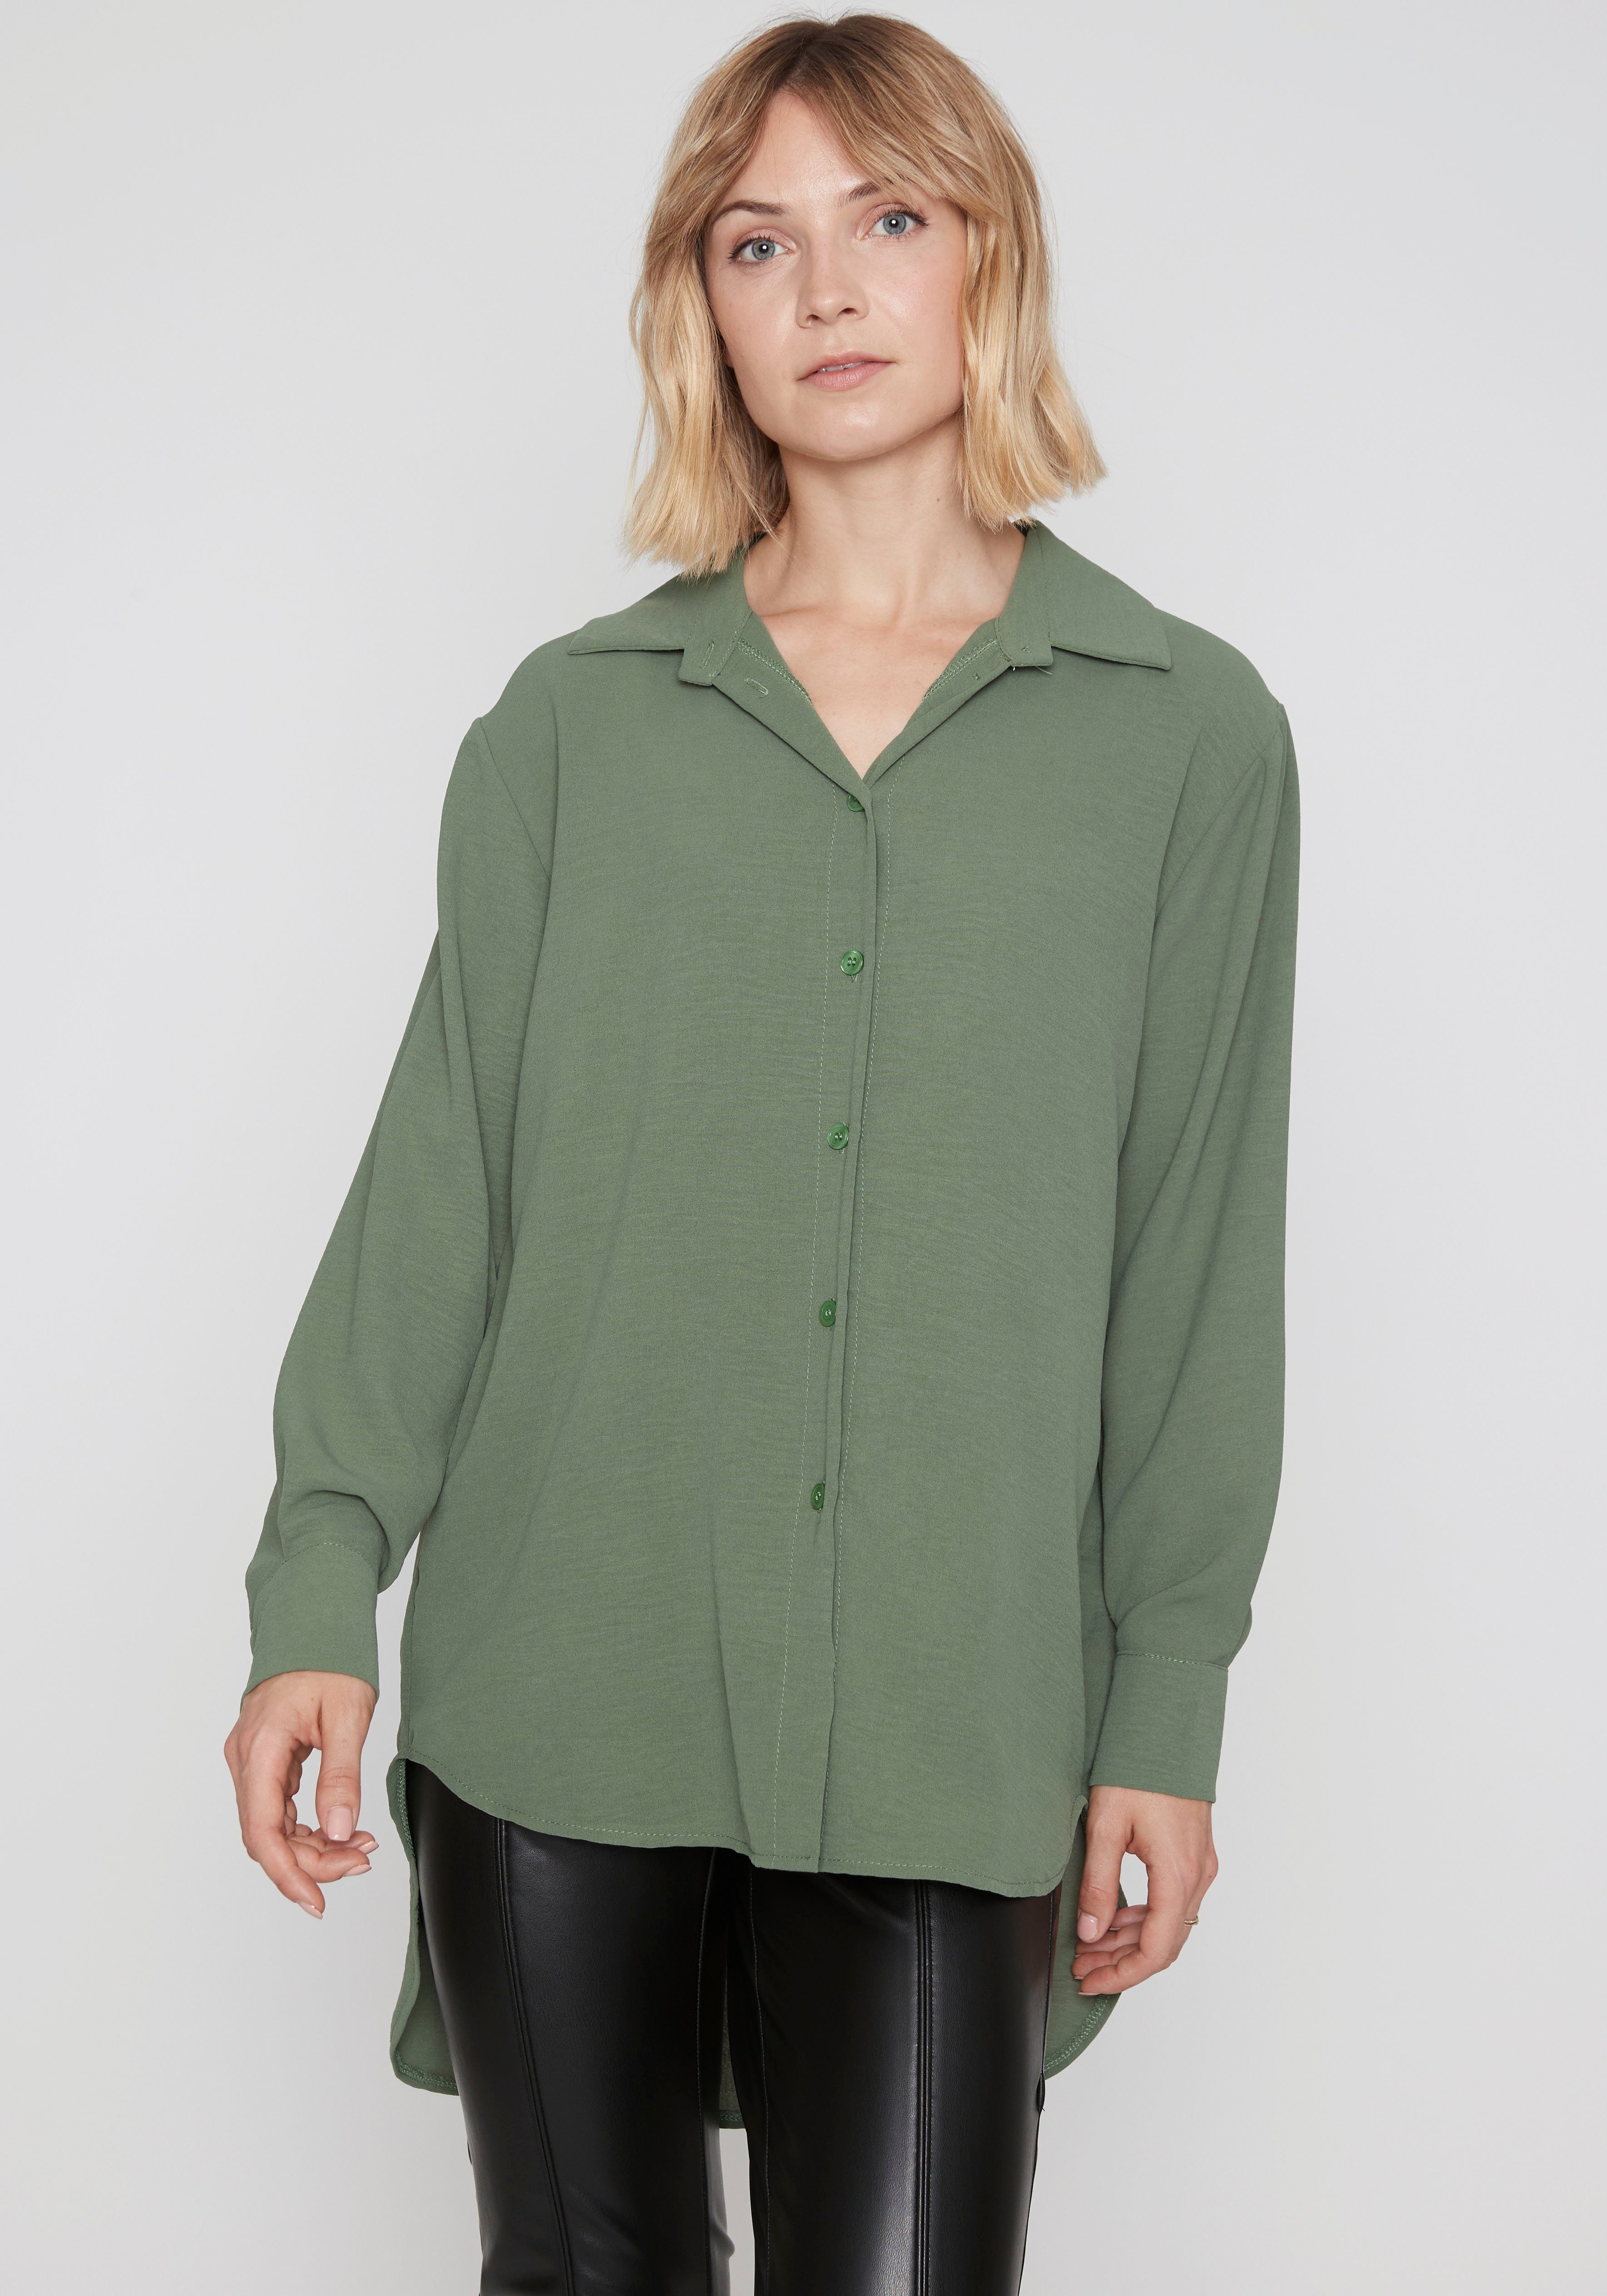 HaILY'S Blusen für Damen online kaufen | OTTO